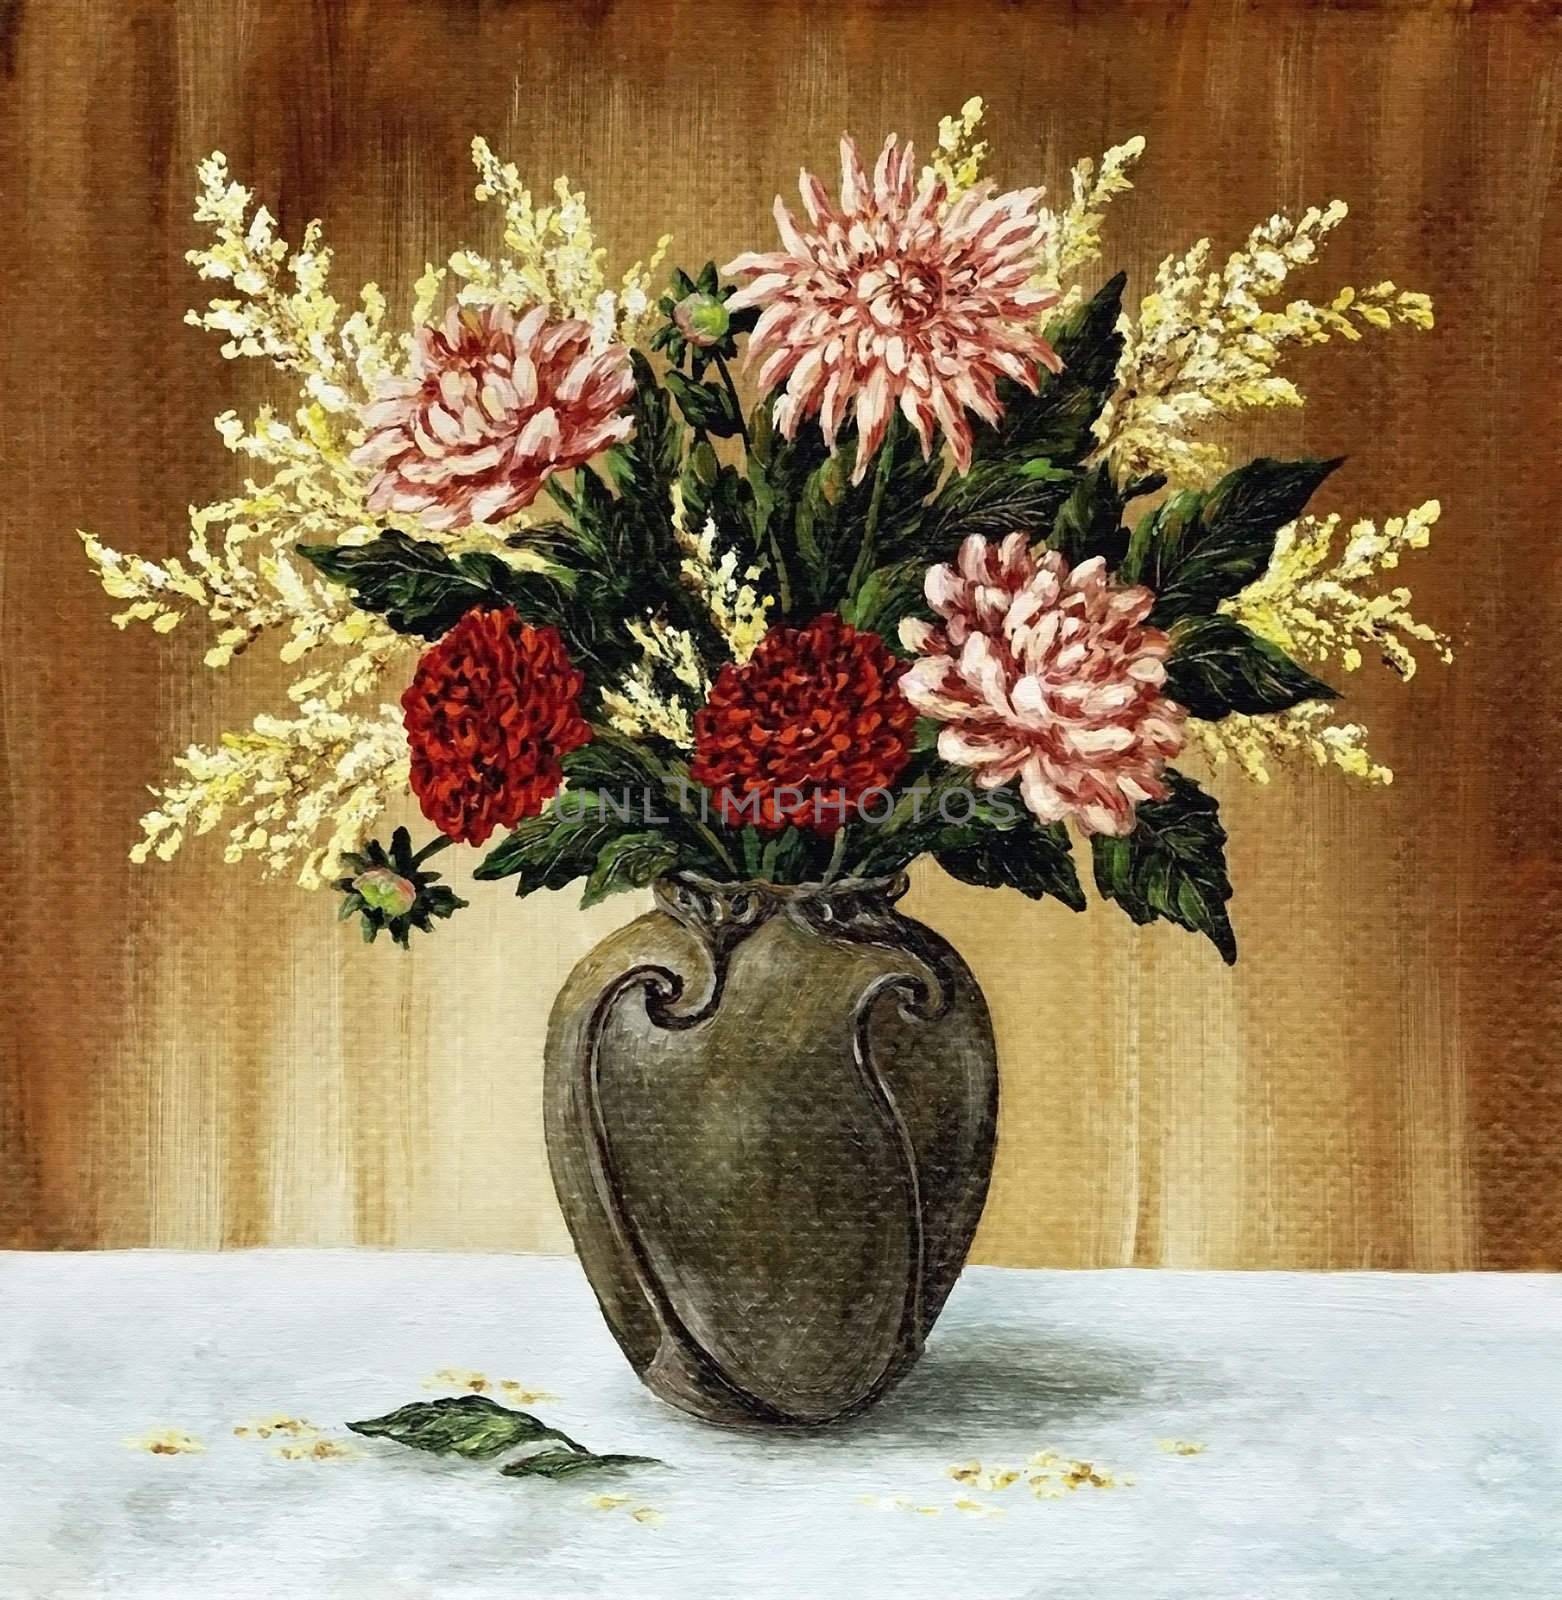 Dahlias in a ceramic vase by alexcoolok